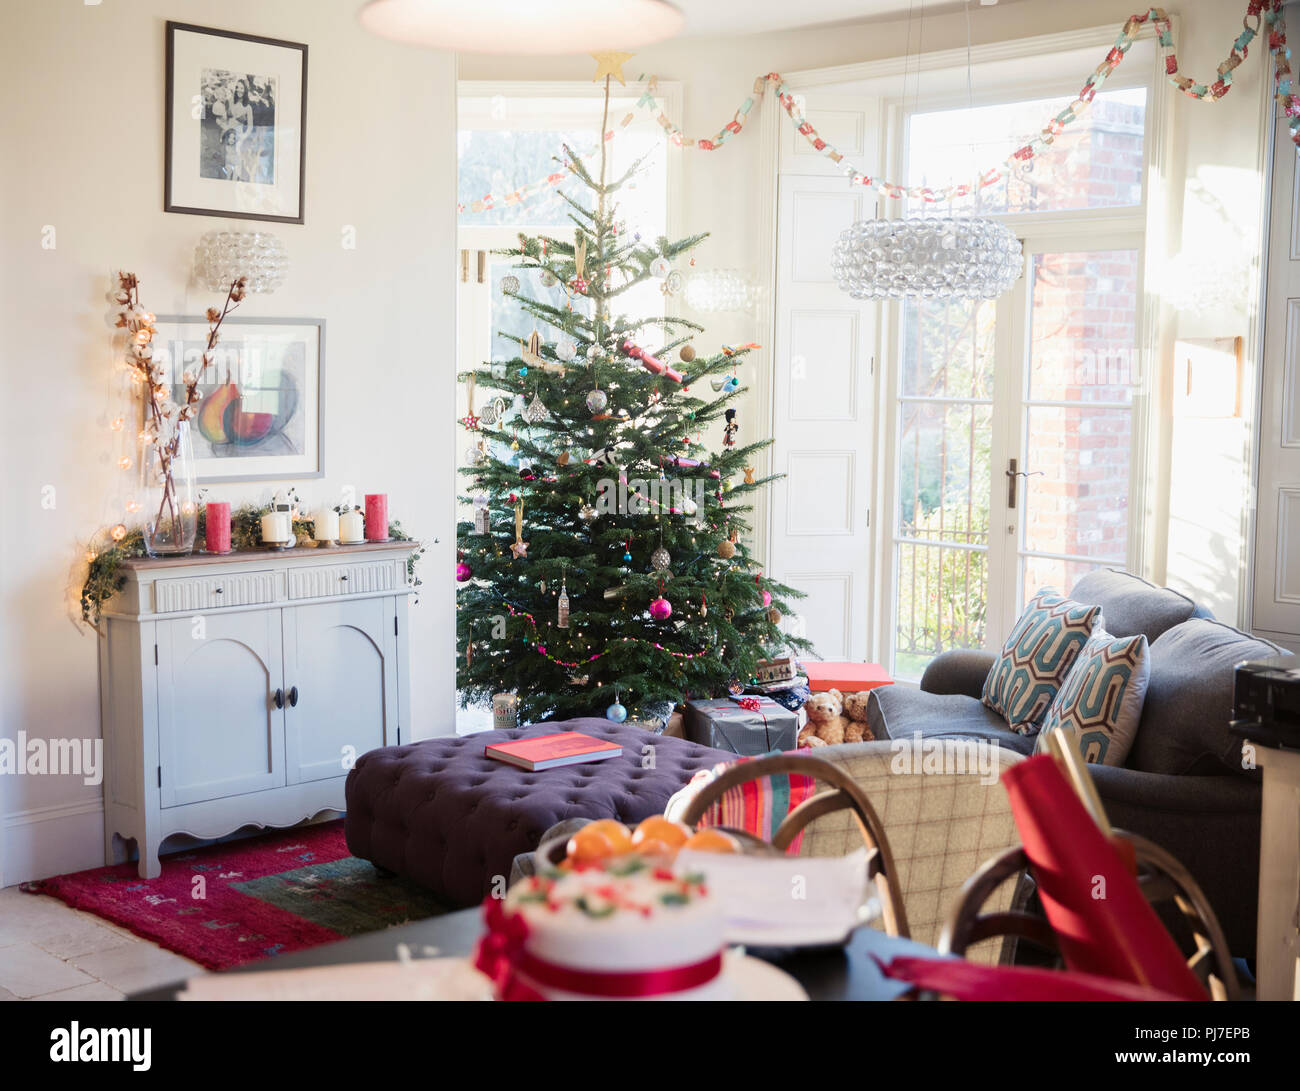 Festliche, Weihnachtsbaum und Wohnzimmer eingerichtet Stockfoto